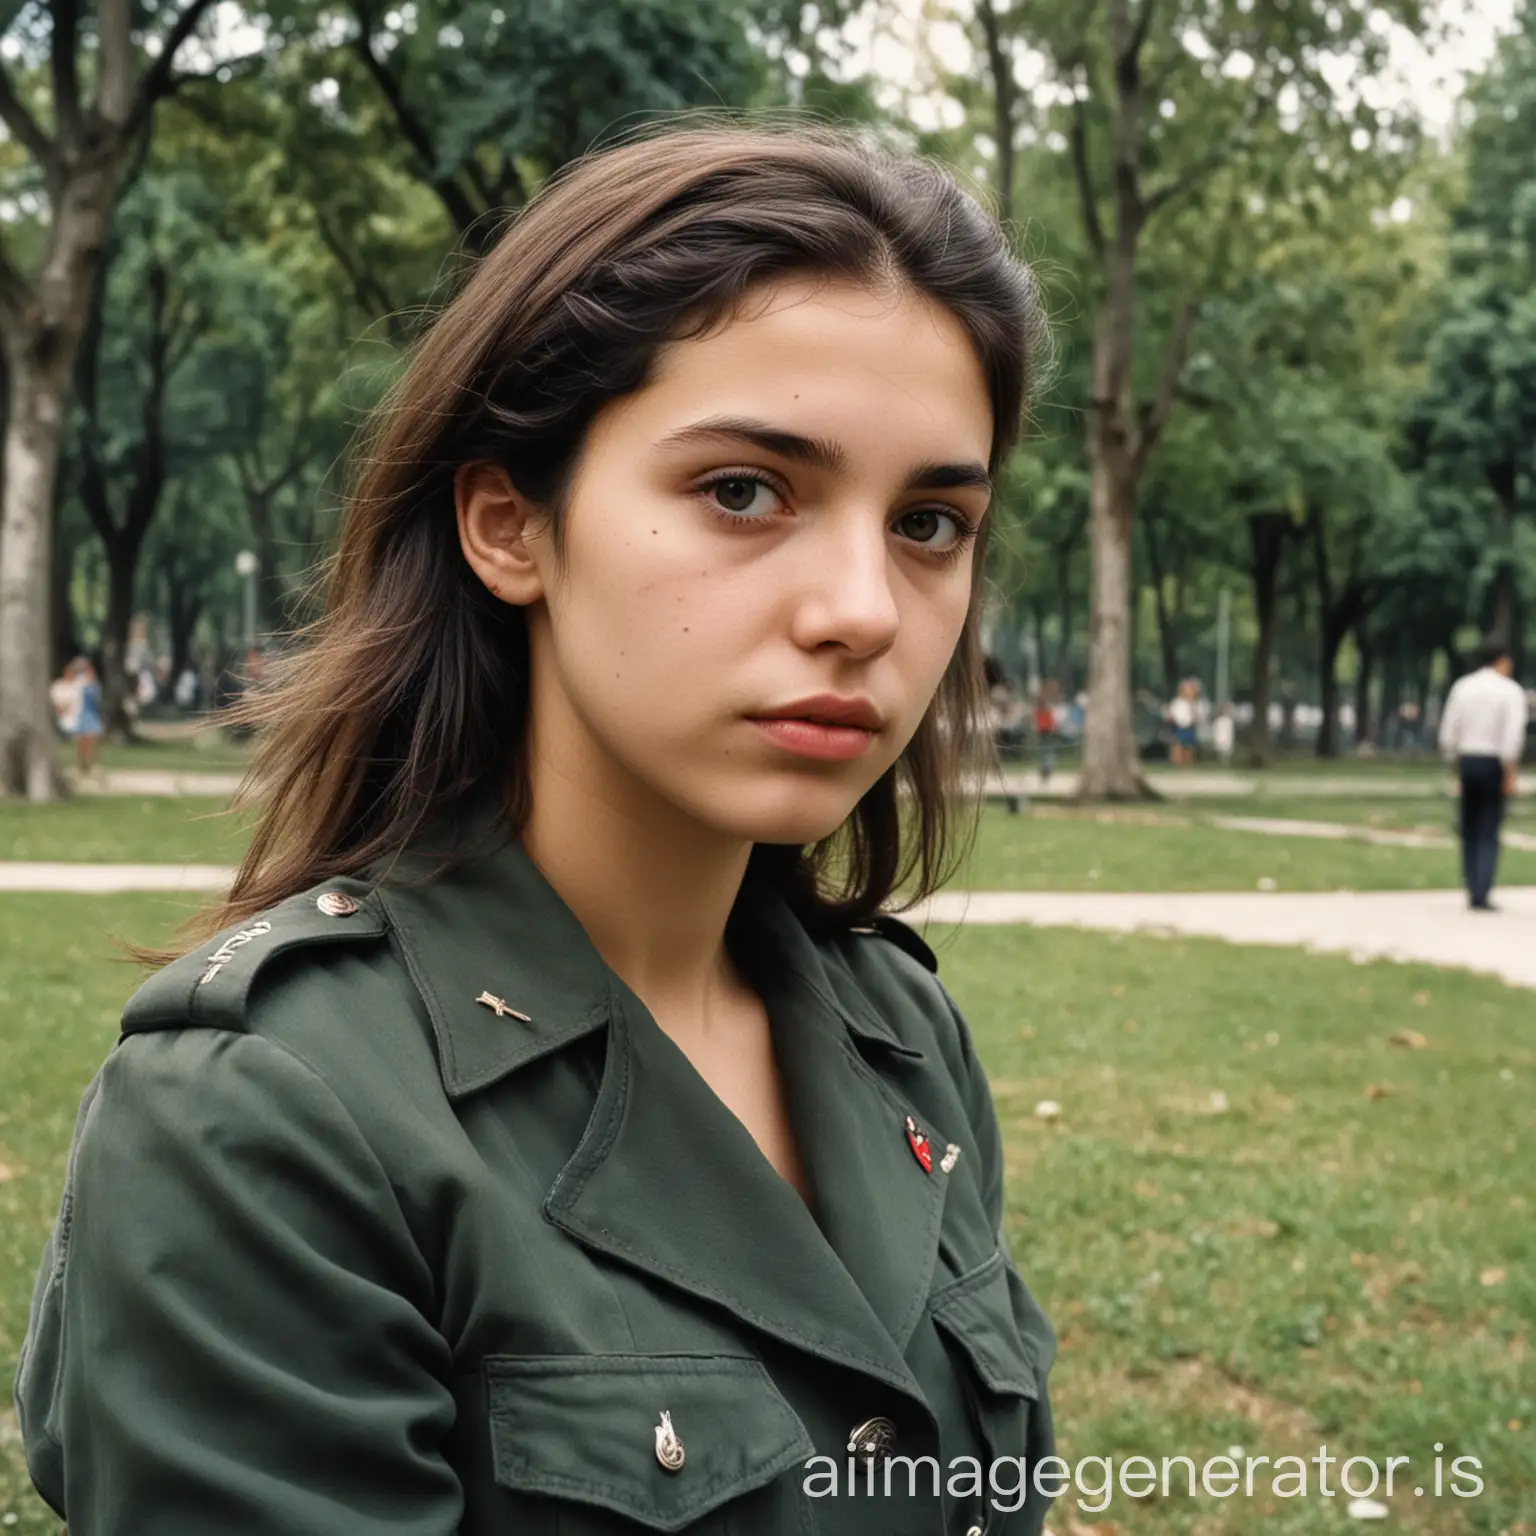 Chica de 23 años peronista, en epoca dictadura, en un parque